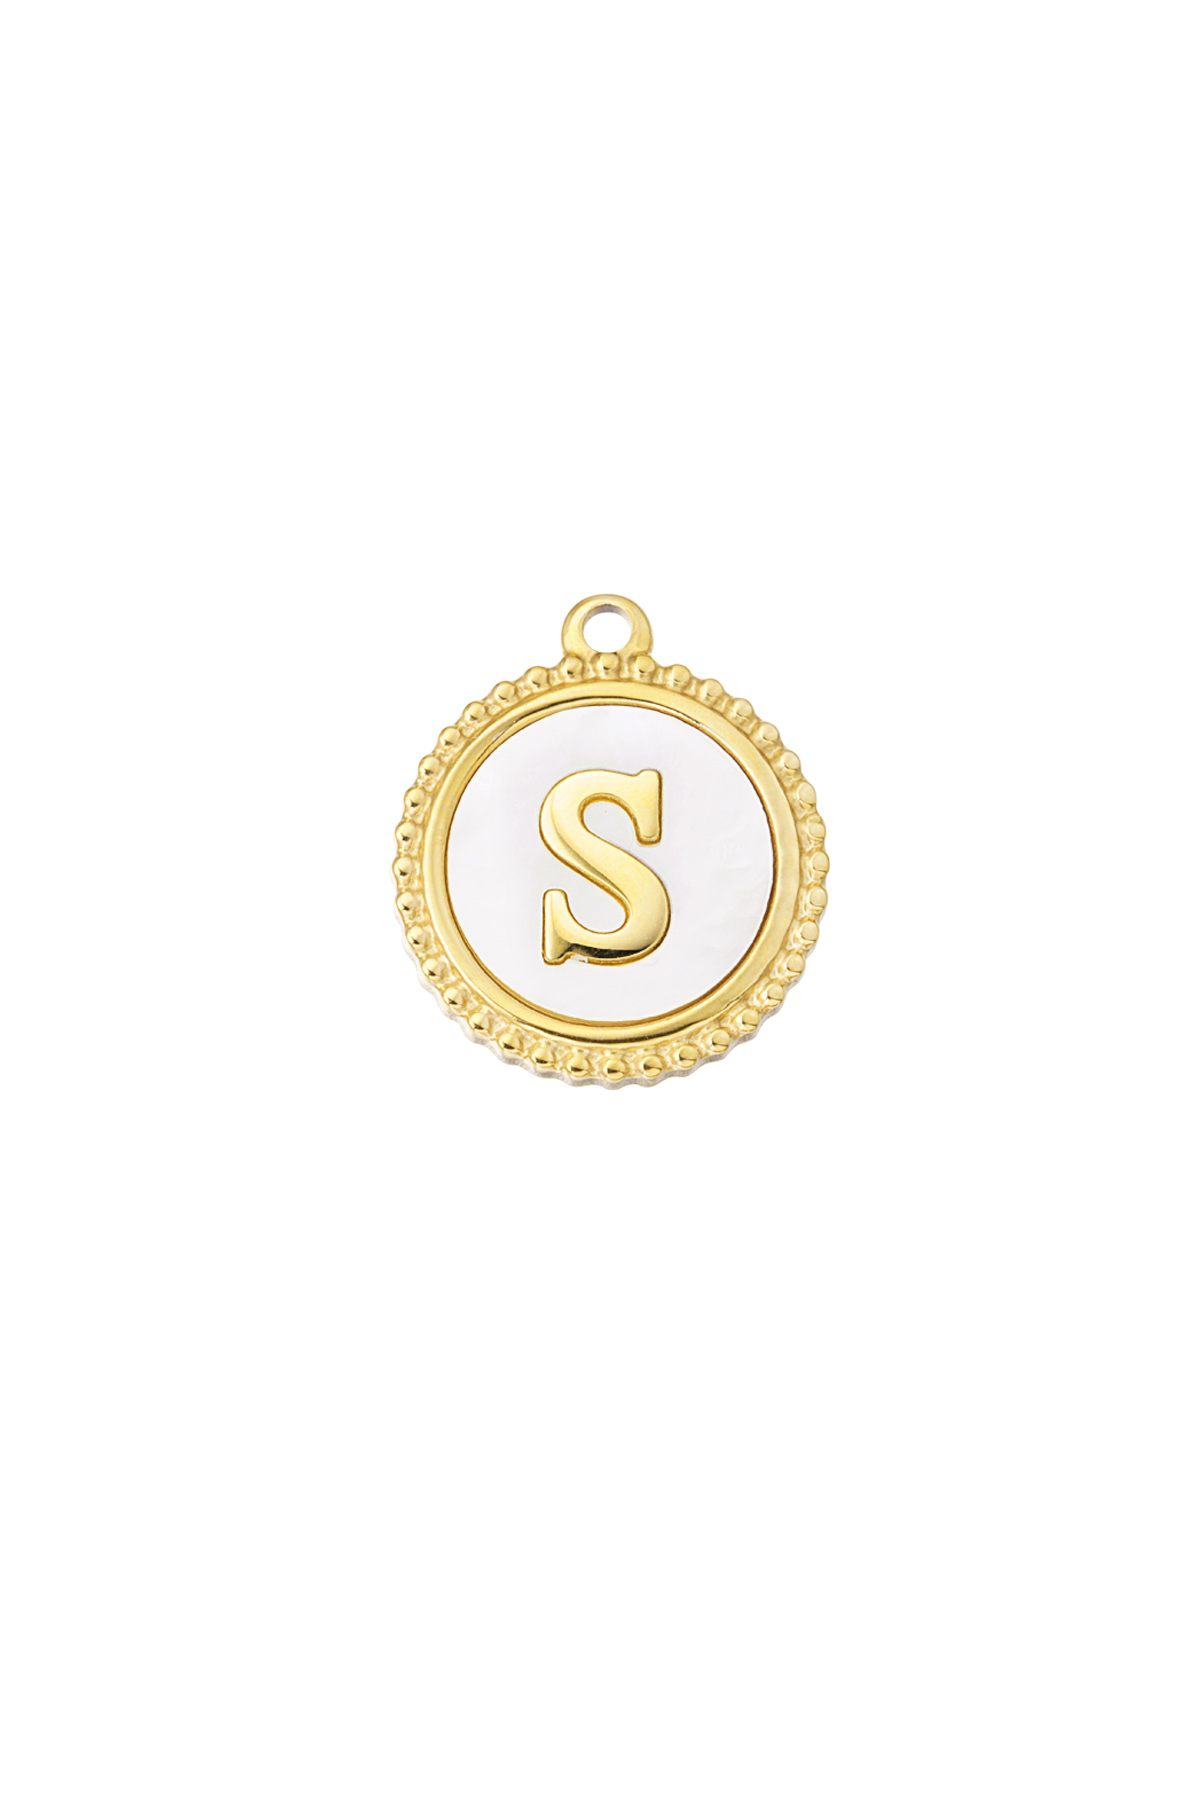 Oro / Charm elegante S - oro/blanco Imagen16